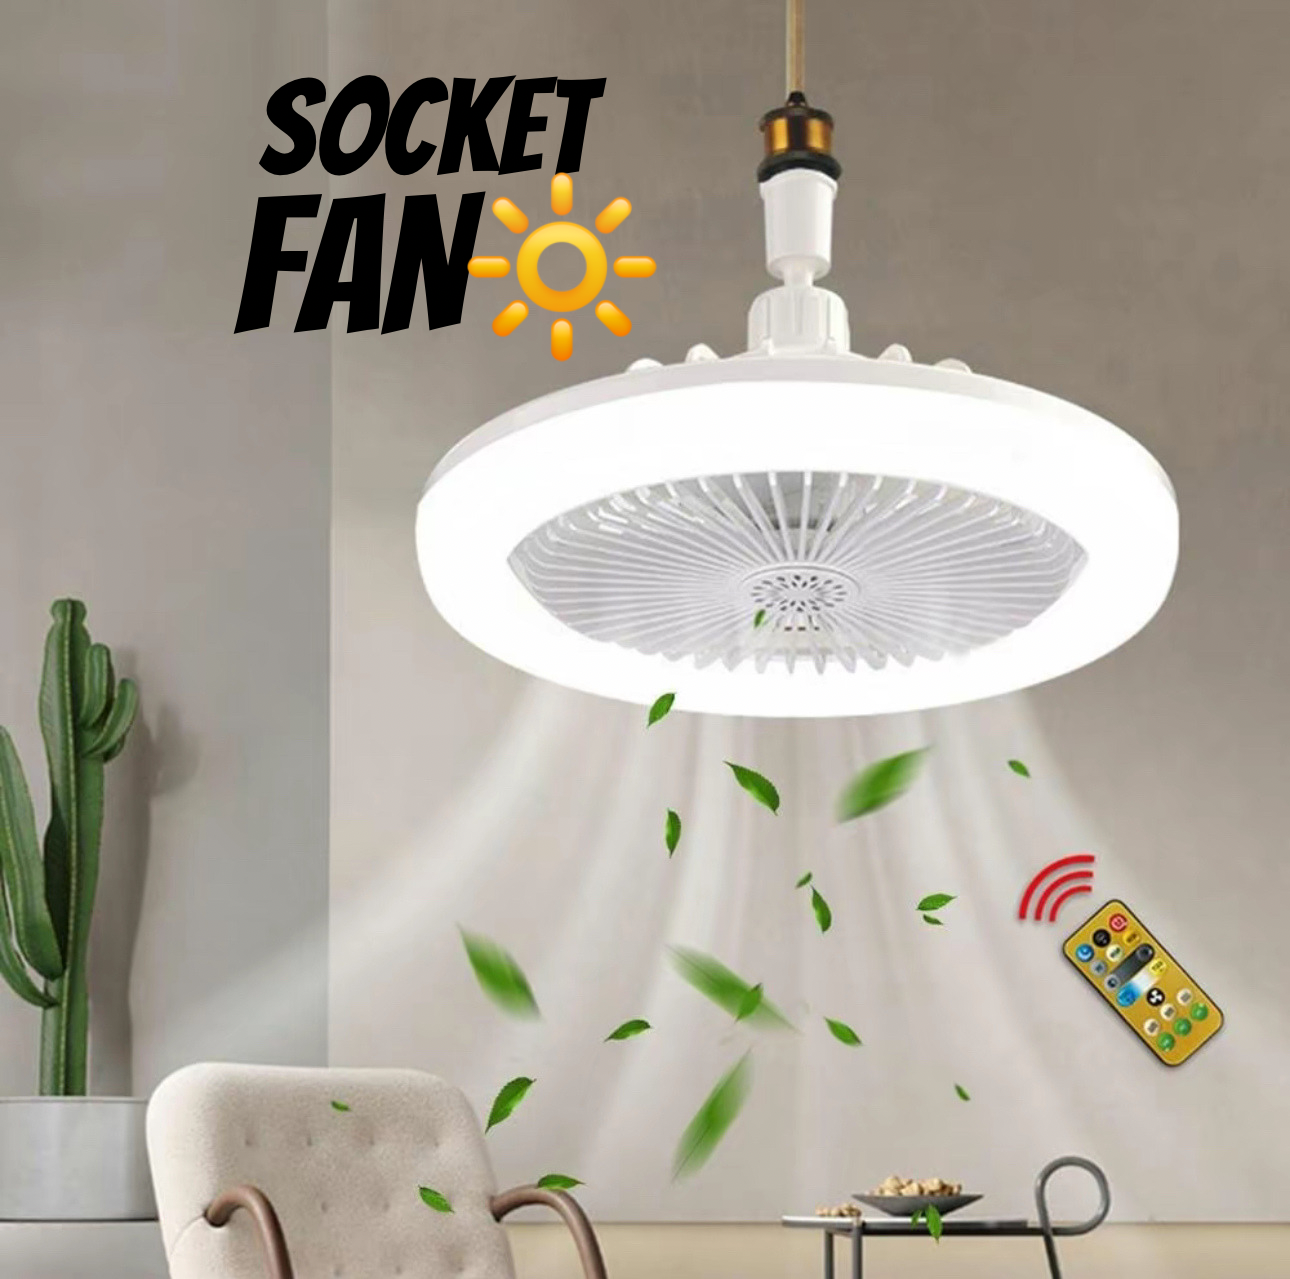 Socket  Fan